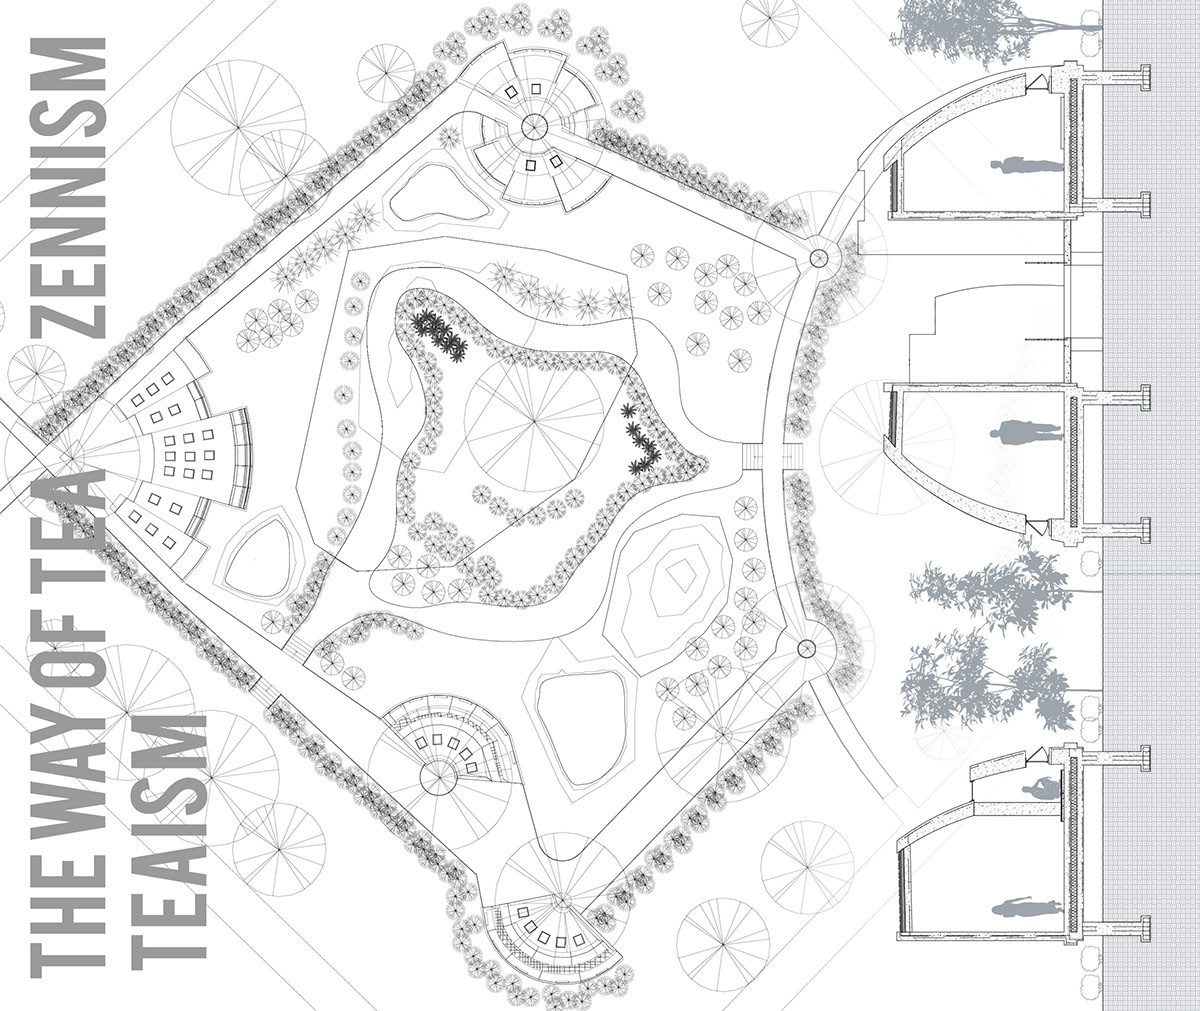 Adobe Portfolio fung shui modeling Electronic Design tea teaism Park Landscape revit zennism pavilion tea house Savannah